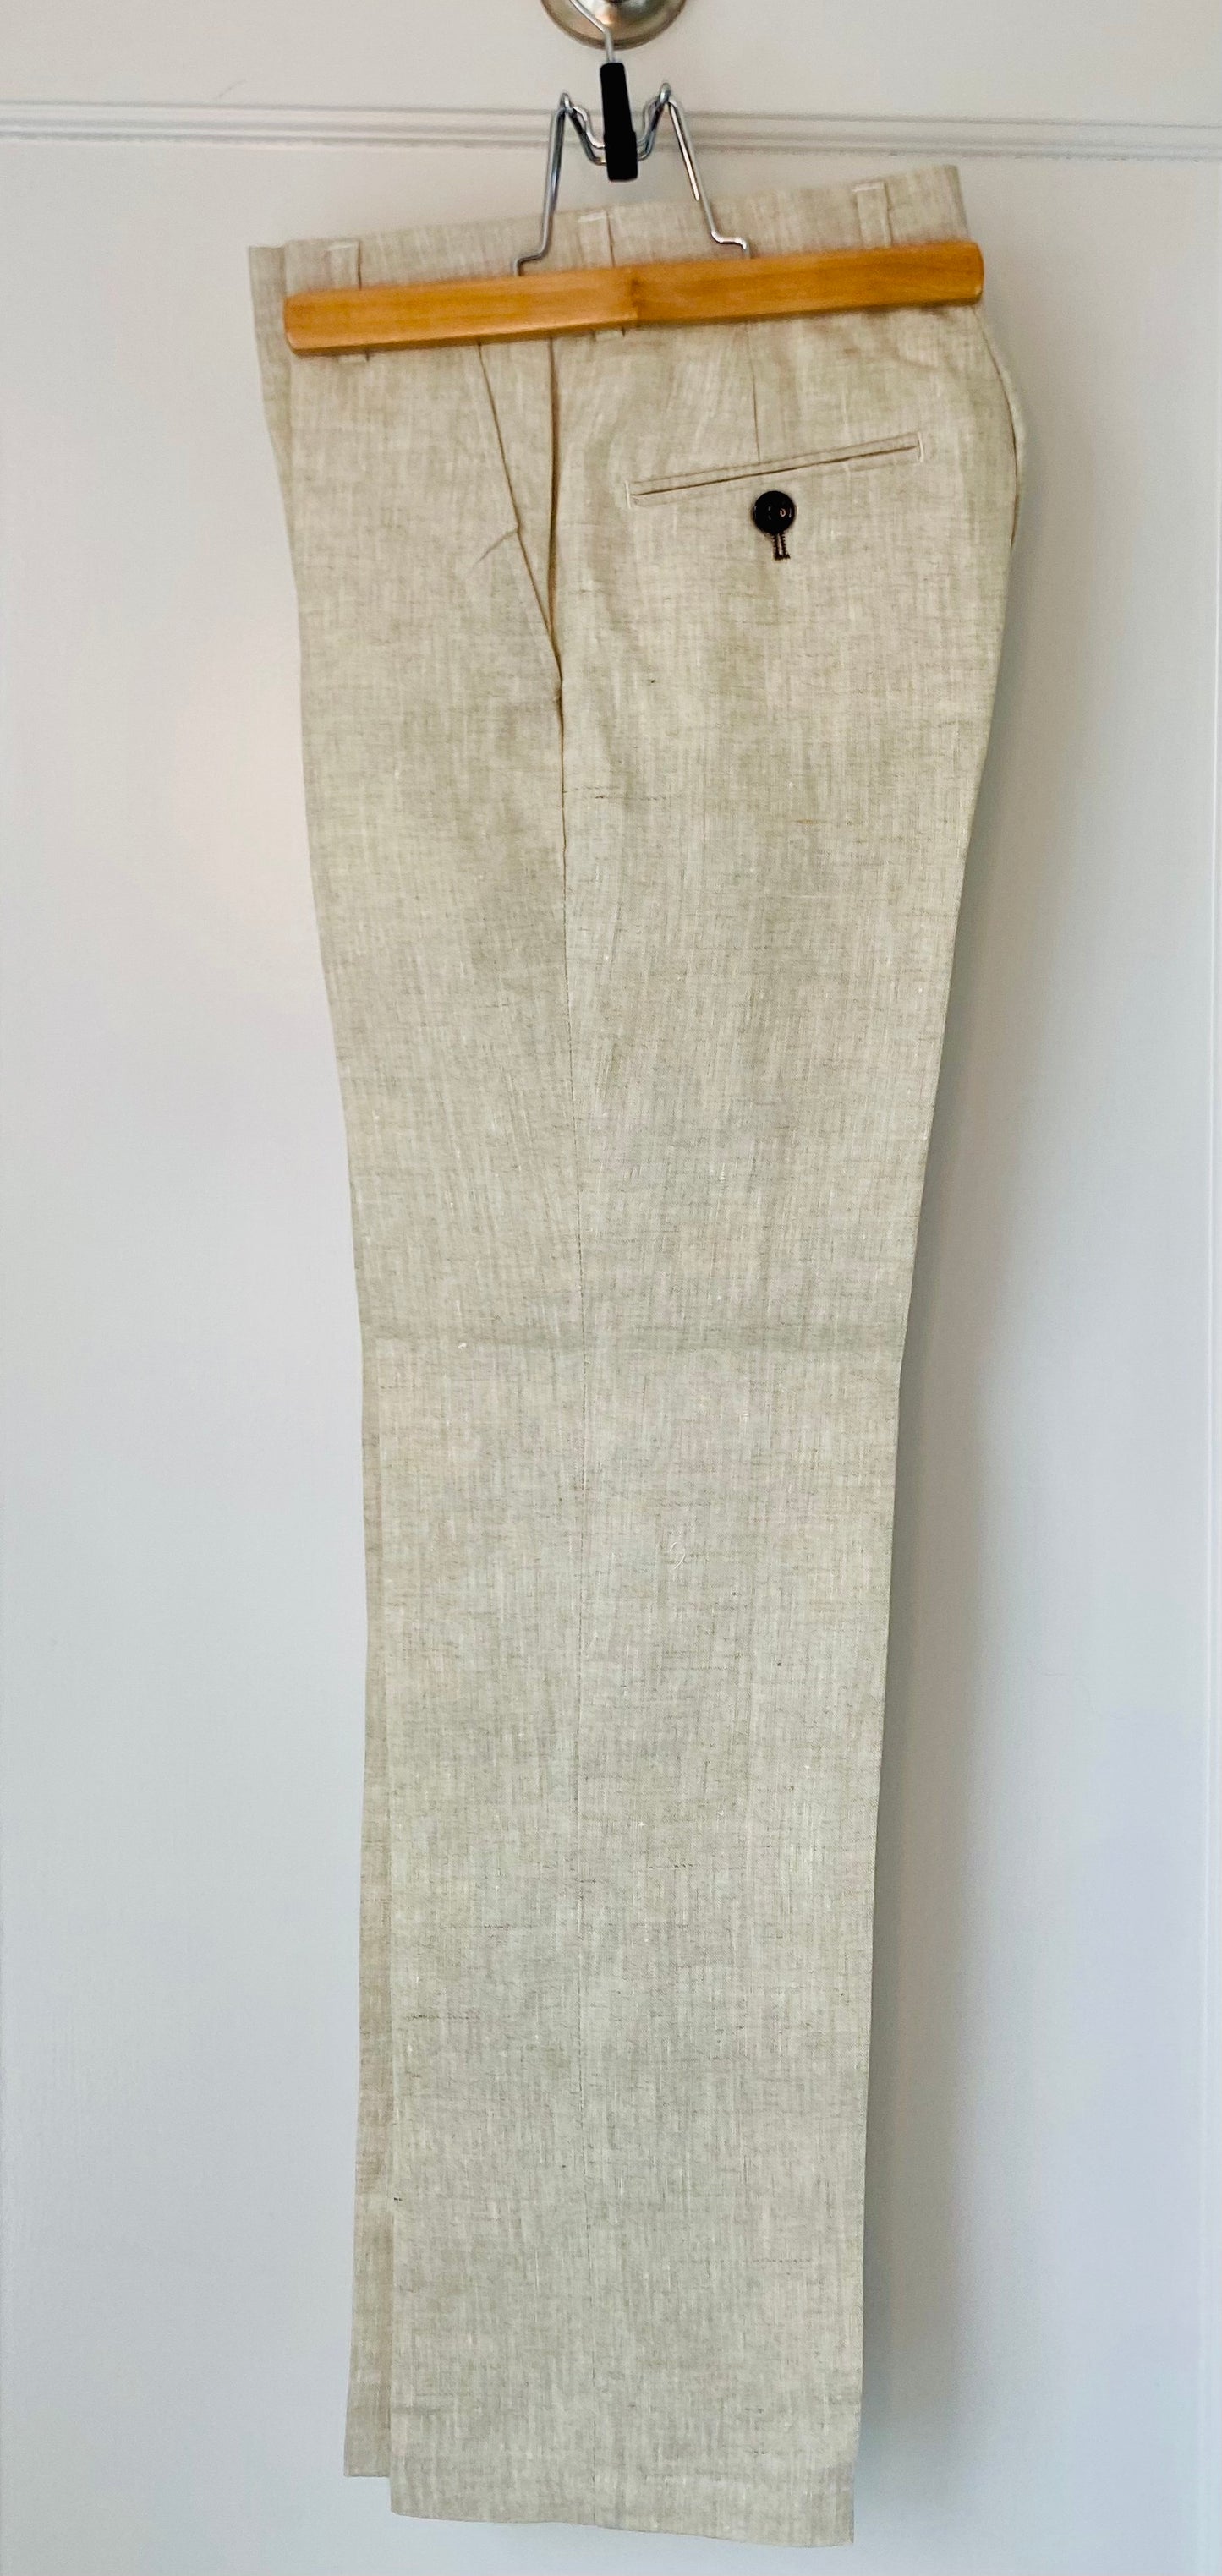 ROMANO Linen Suit 2 pieces NWT/ 10Y